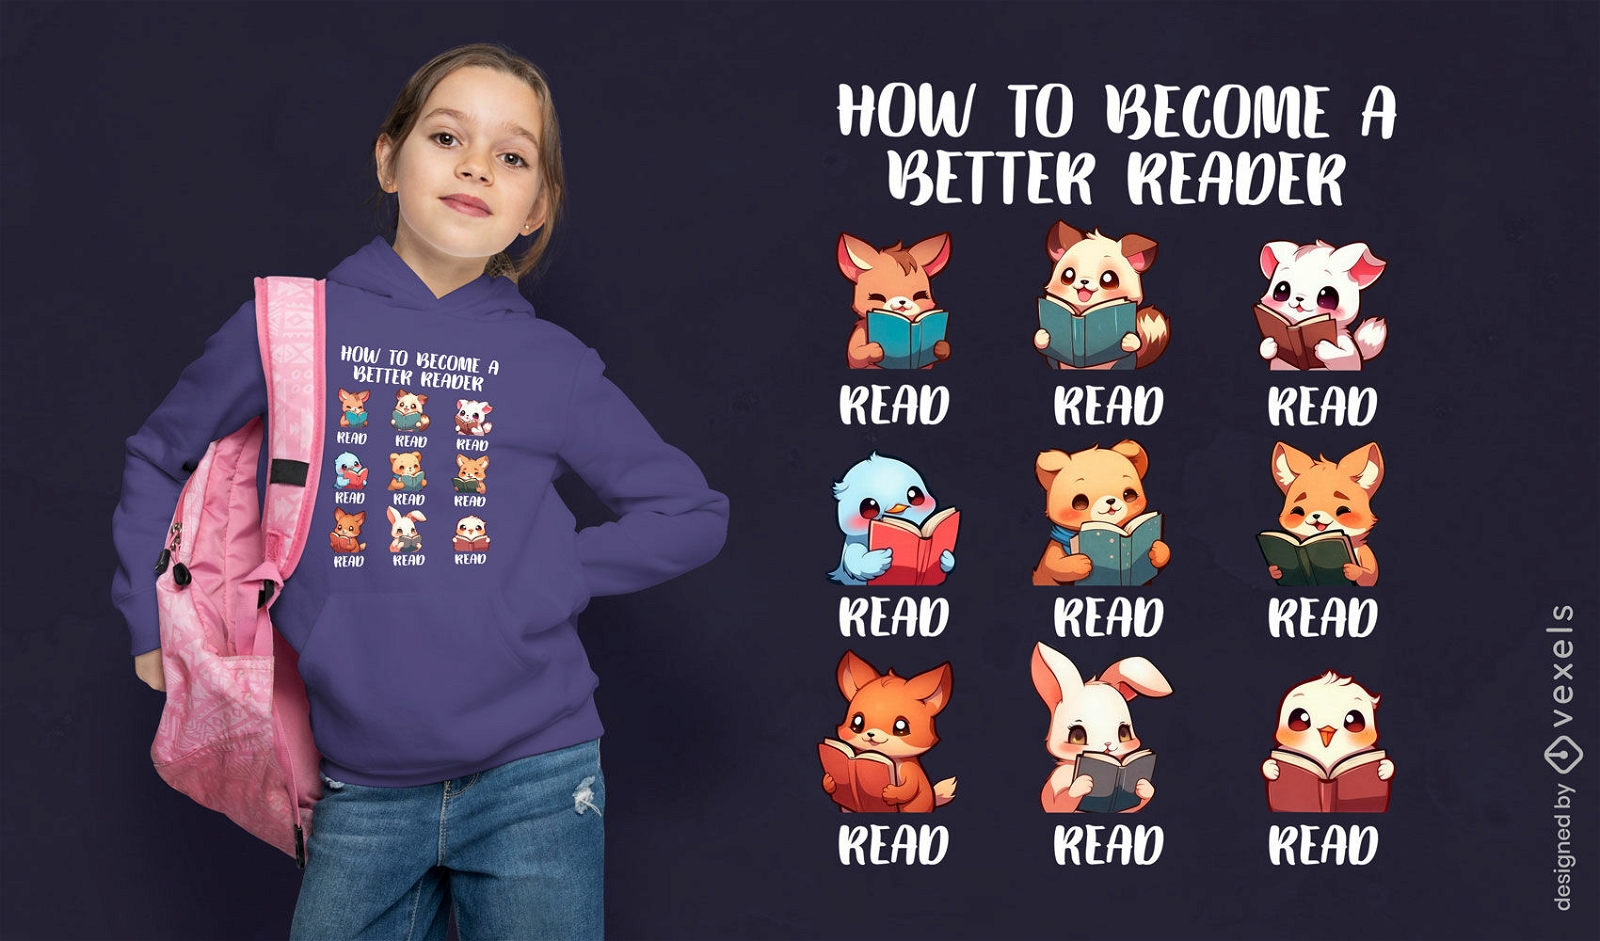 Dise?o de camiseta de lectura de animales educativos.